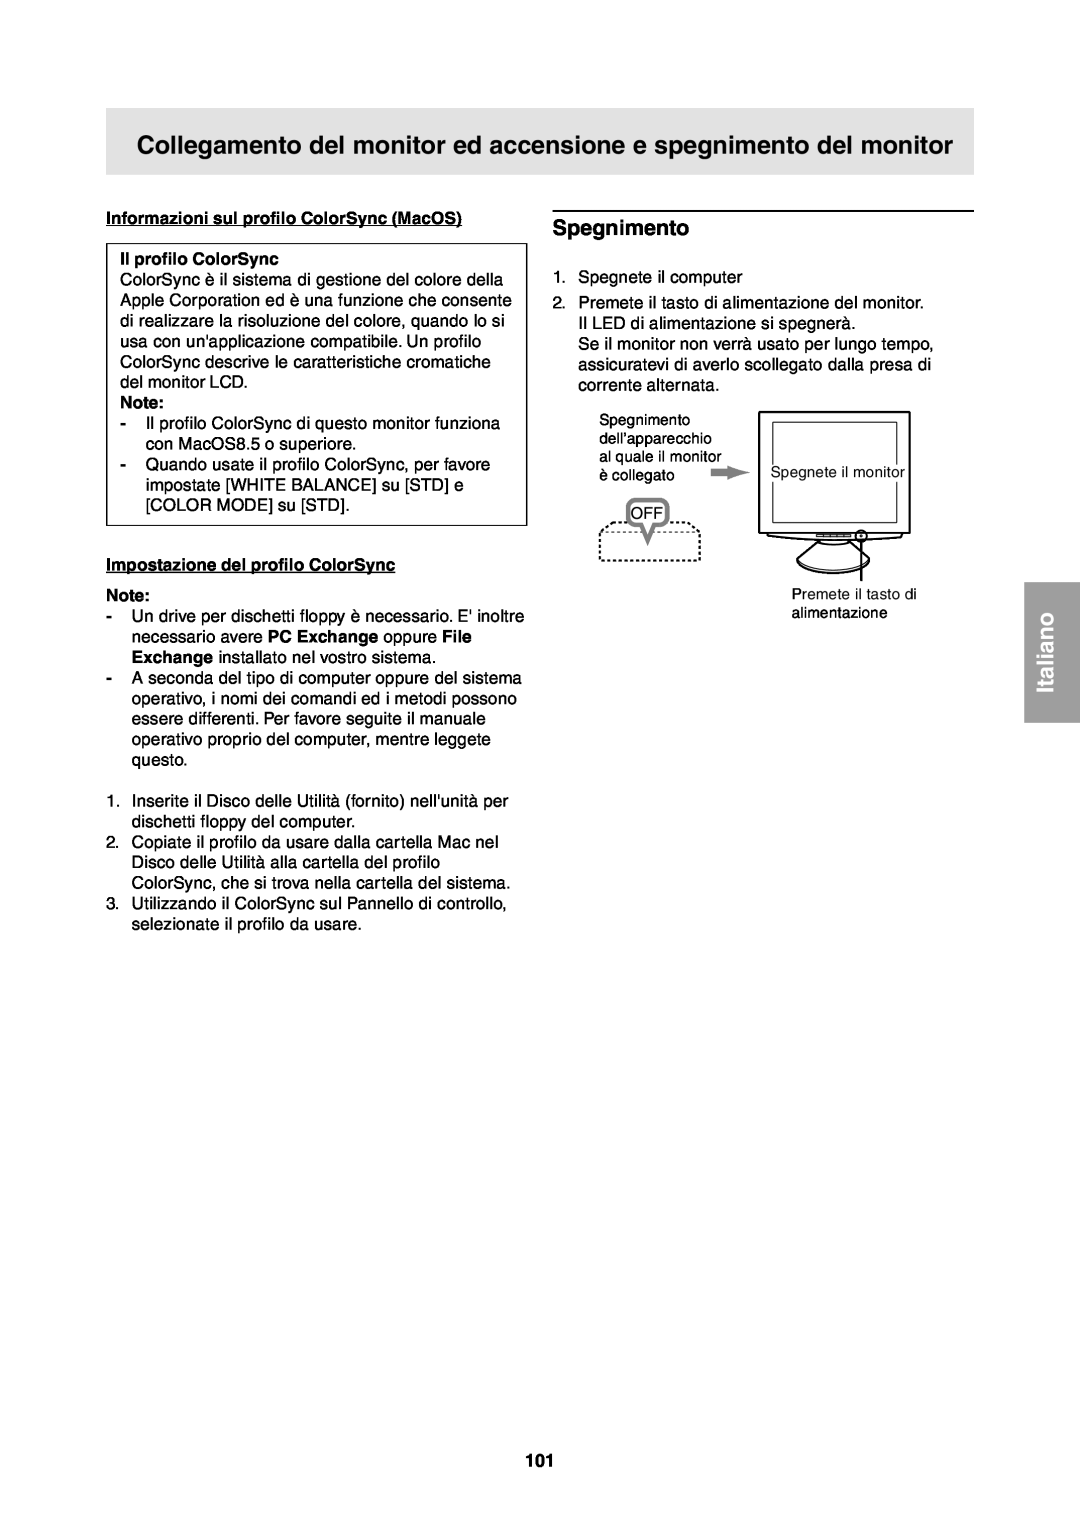 Sharp LL-T1811W operation manual Spegnimento, Informazioni sul profilo ColorSync MacOS Il profilo ColorSync, Italiano 